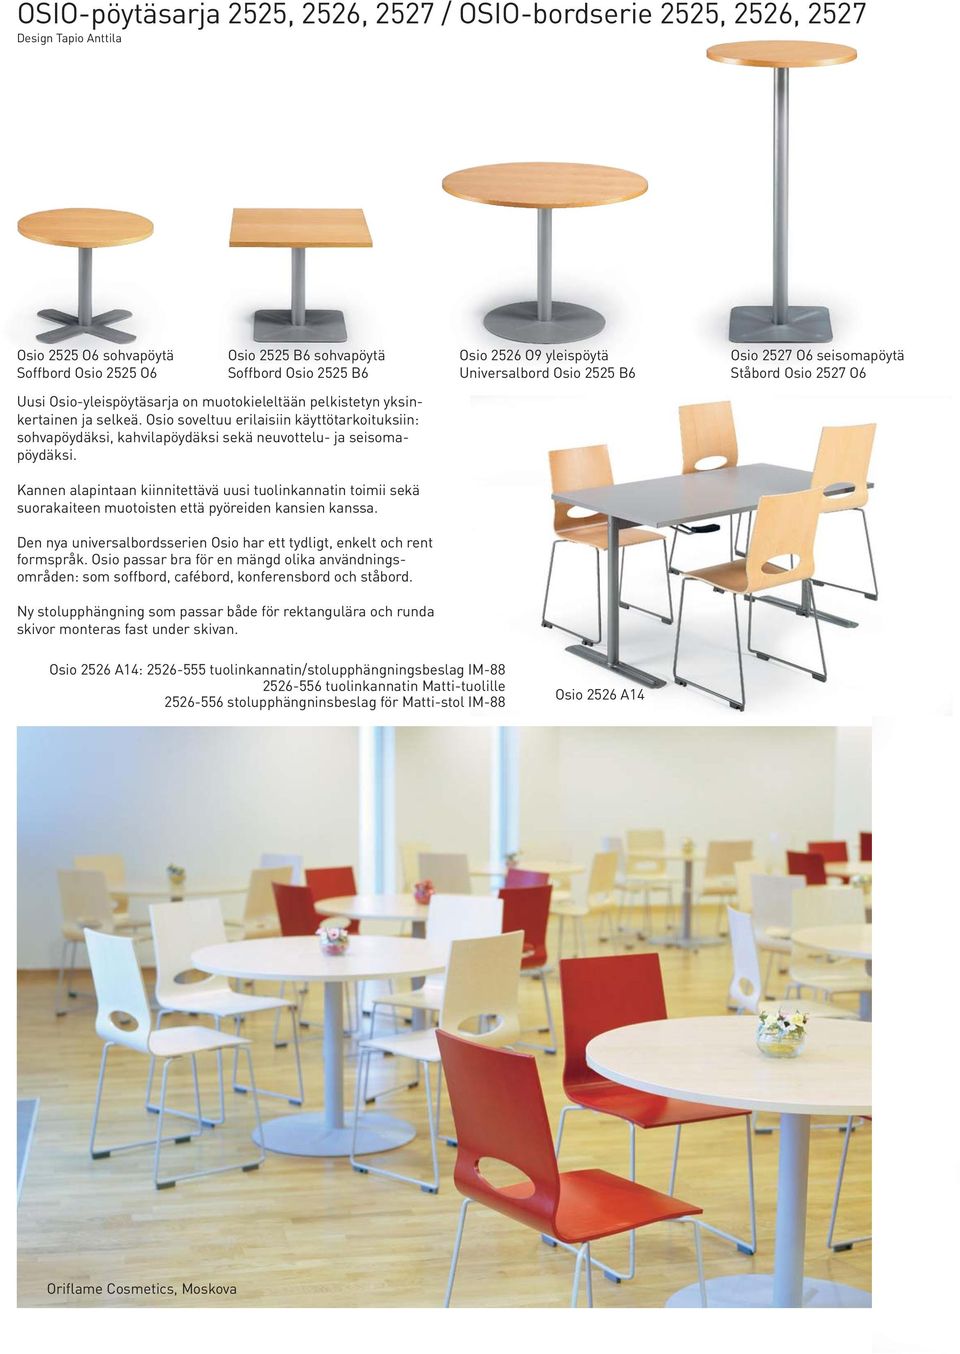 Osio soveltuu erilaisiin käyttötarkoituksiin: sohvapöydäksi, kahvilapöydäksi sekä neuvottelu- ja seisomapöydäksi.